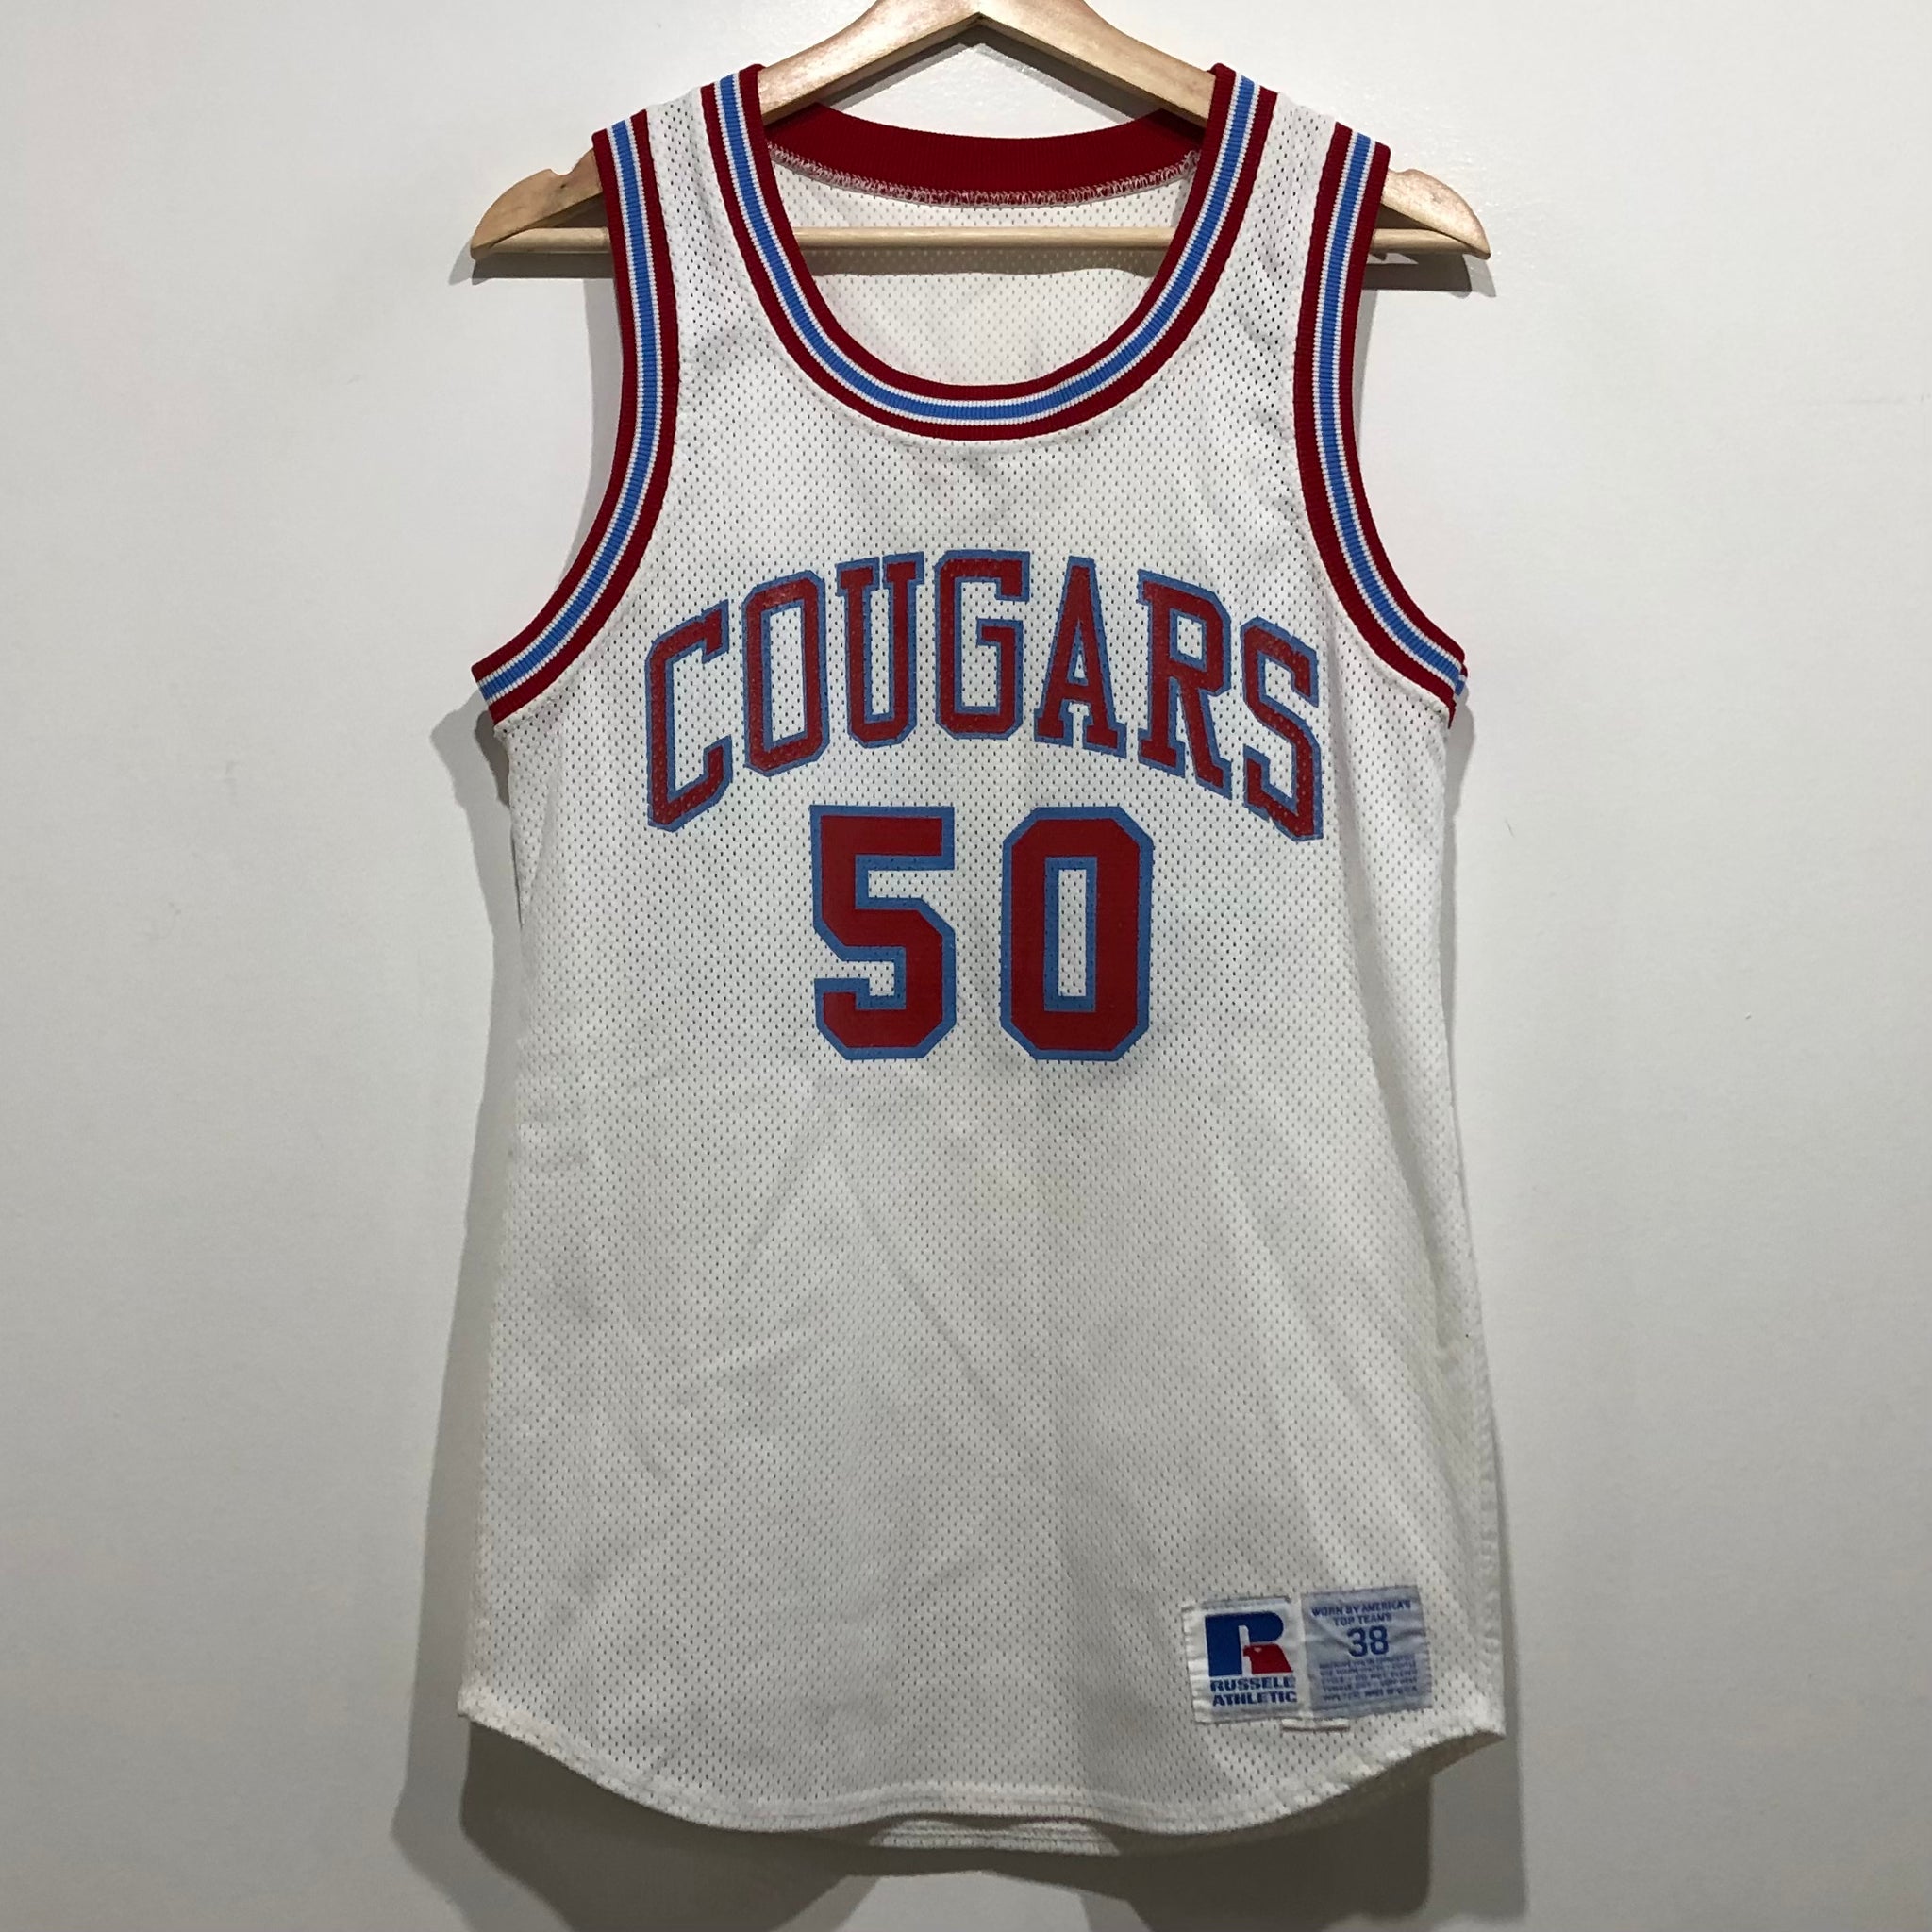 Vintage Cougars Game Worn Basketball Jersey M